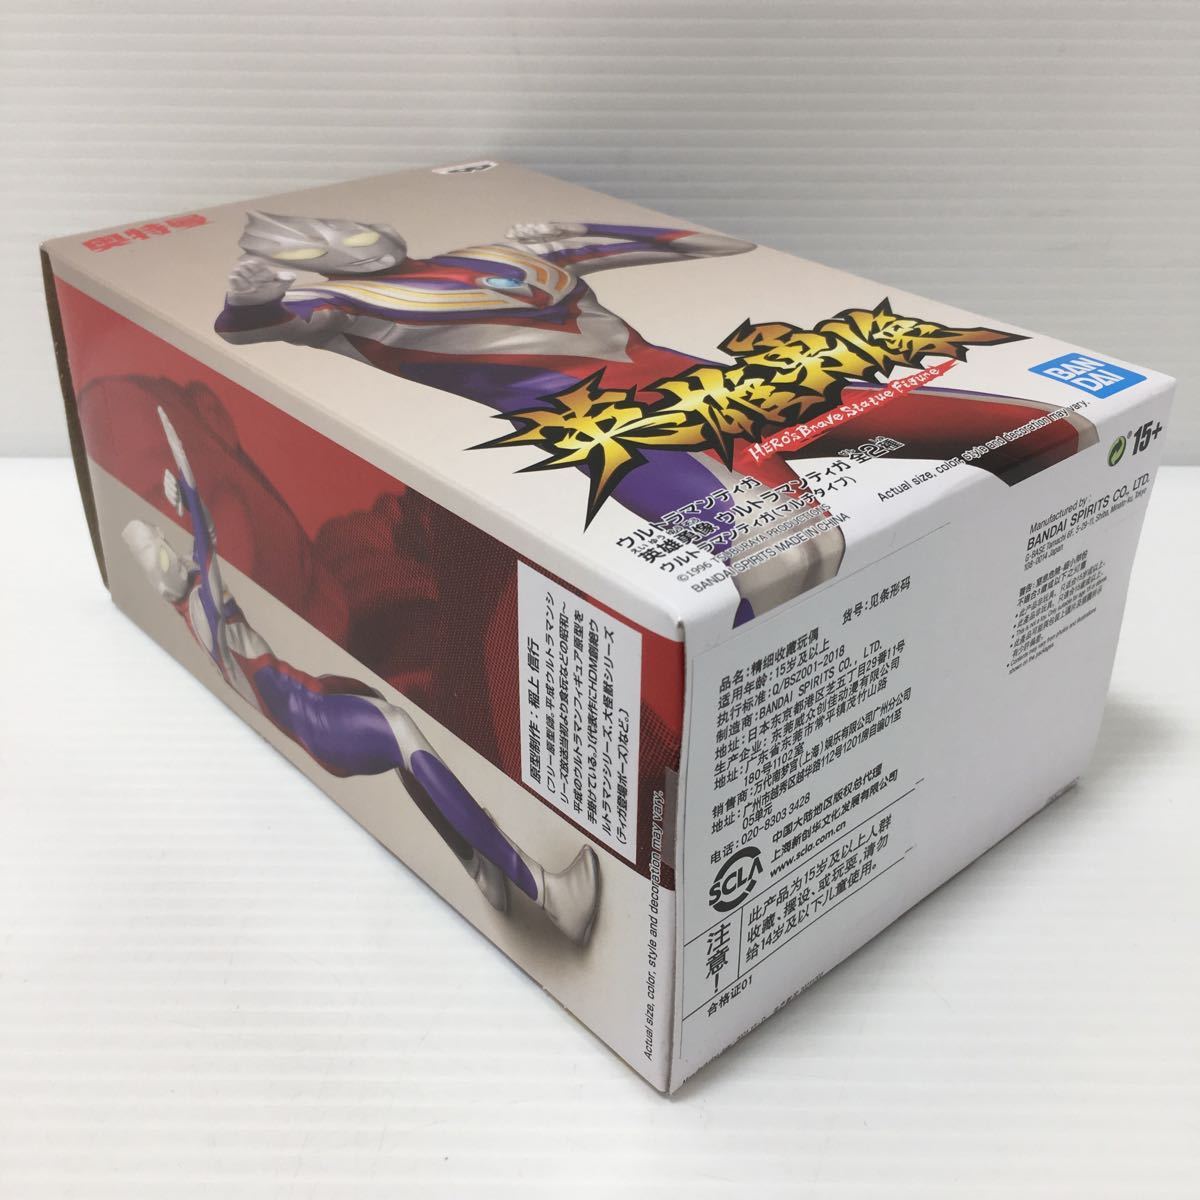 [ быстрое решение * вскрыть прекрасный товар ] герой . изображение Ultraman Tiga мульти- модель фигурка Ultraman Tiga внутри Special .. сверху доверие line 